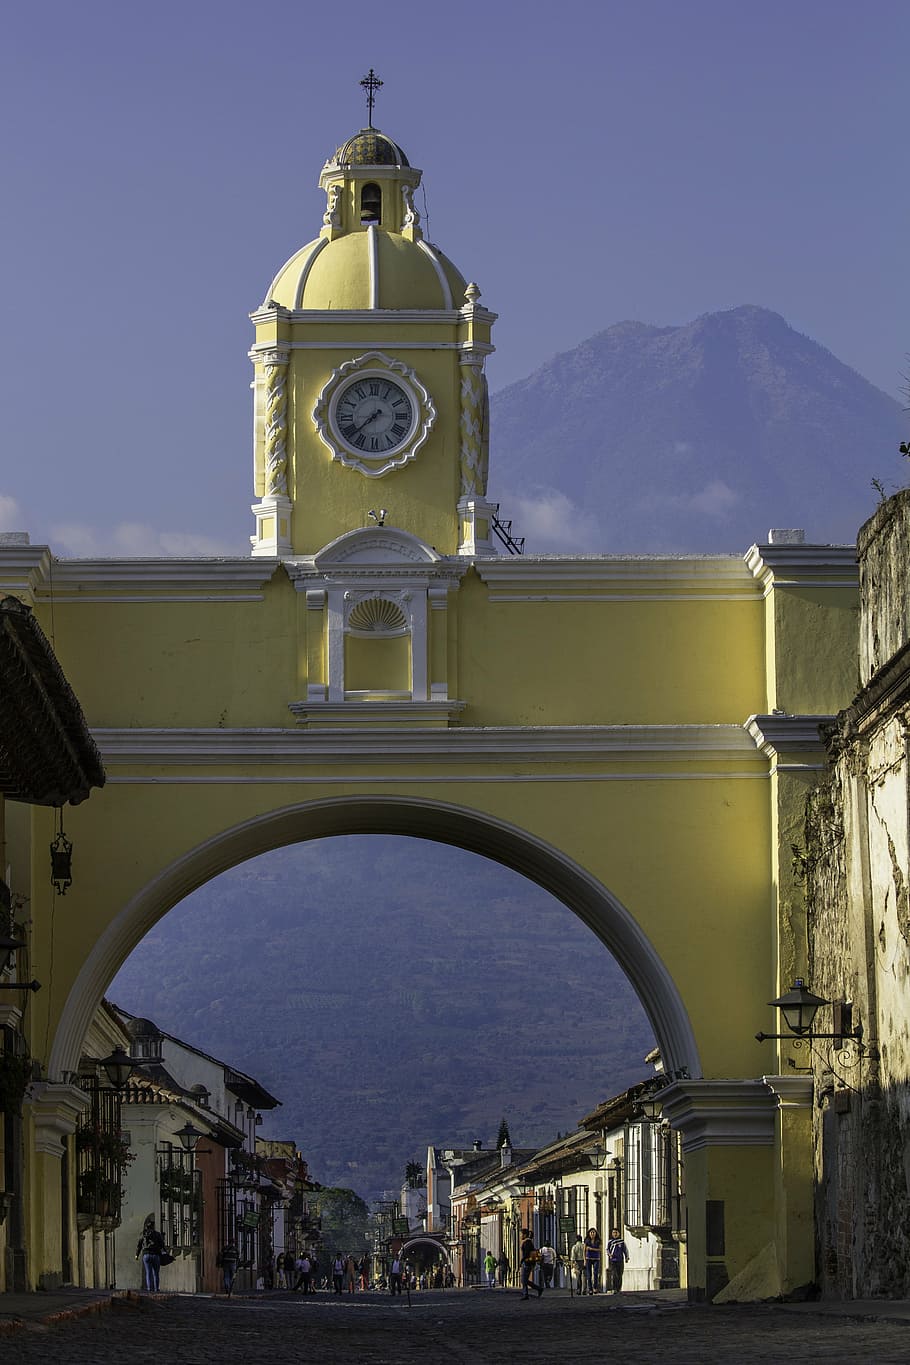 amarelo, concreto, relógio da torre, dia, guatemala, américa central, antiguaguatemala, américa latina, cão, ruas